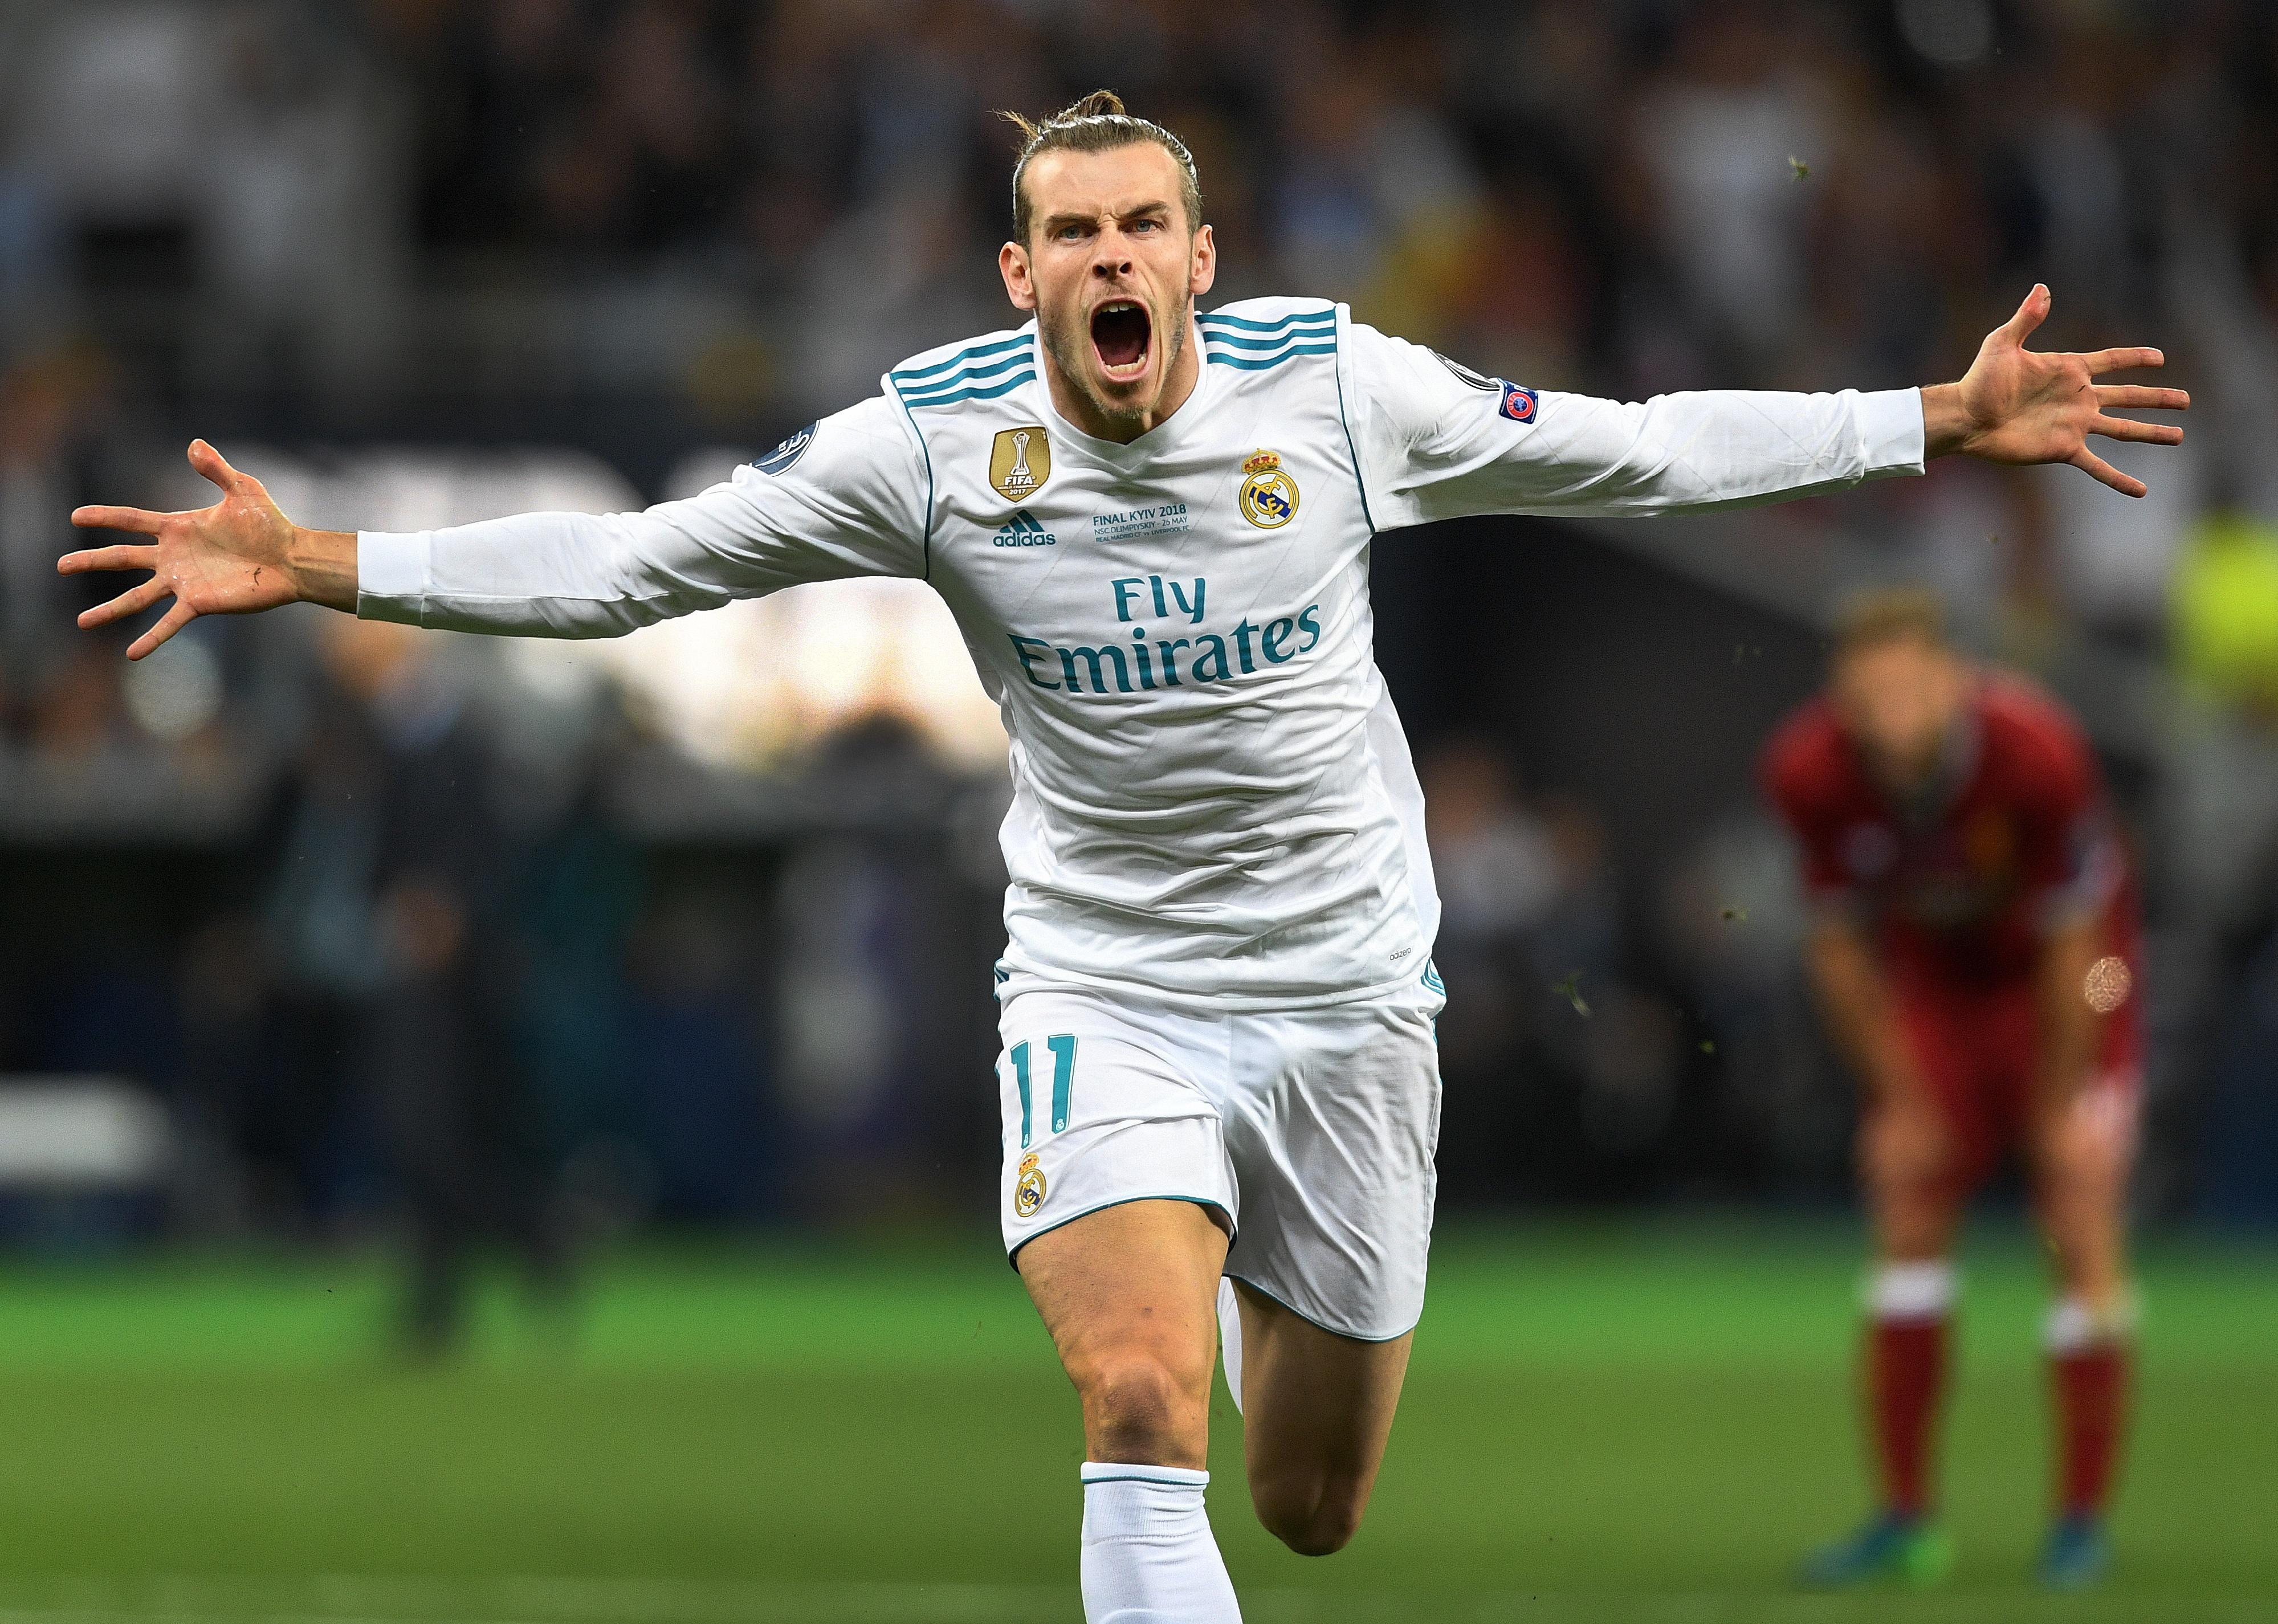 Gareth Bale of Real Madrid celebrates scoring a goal